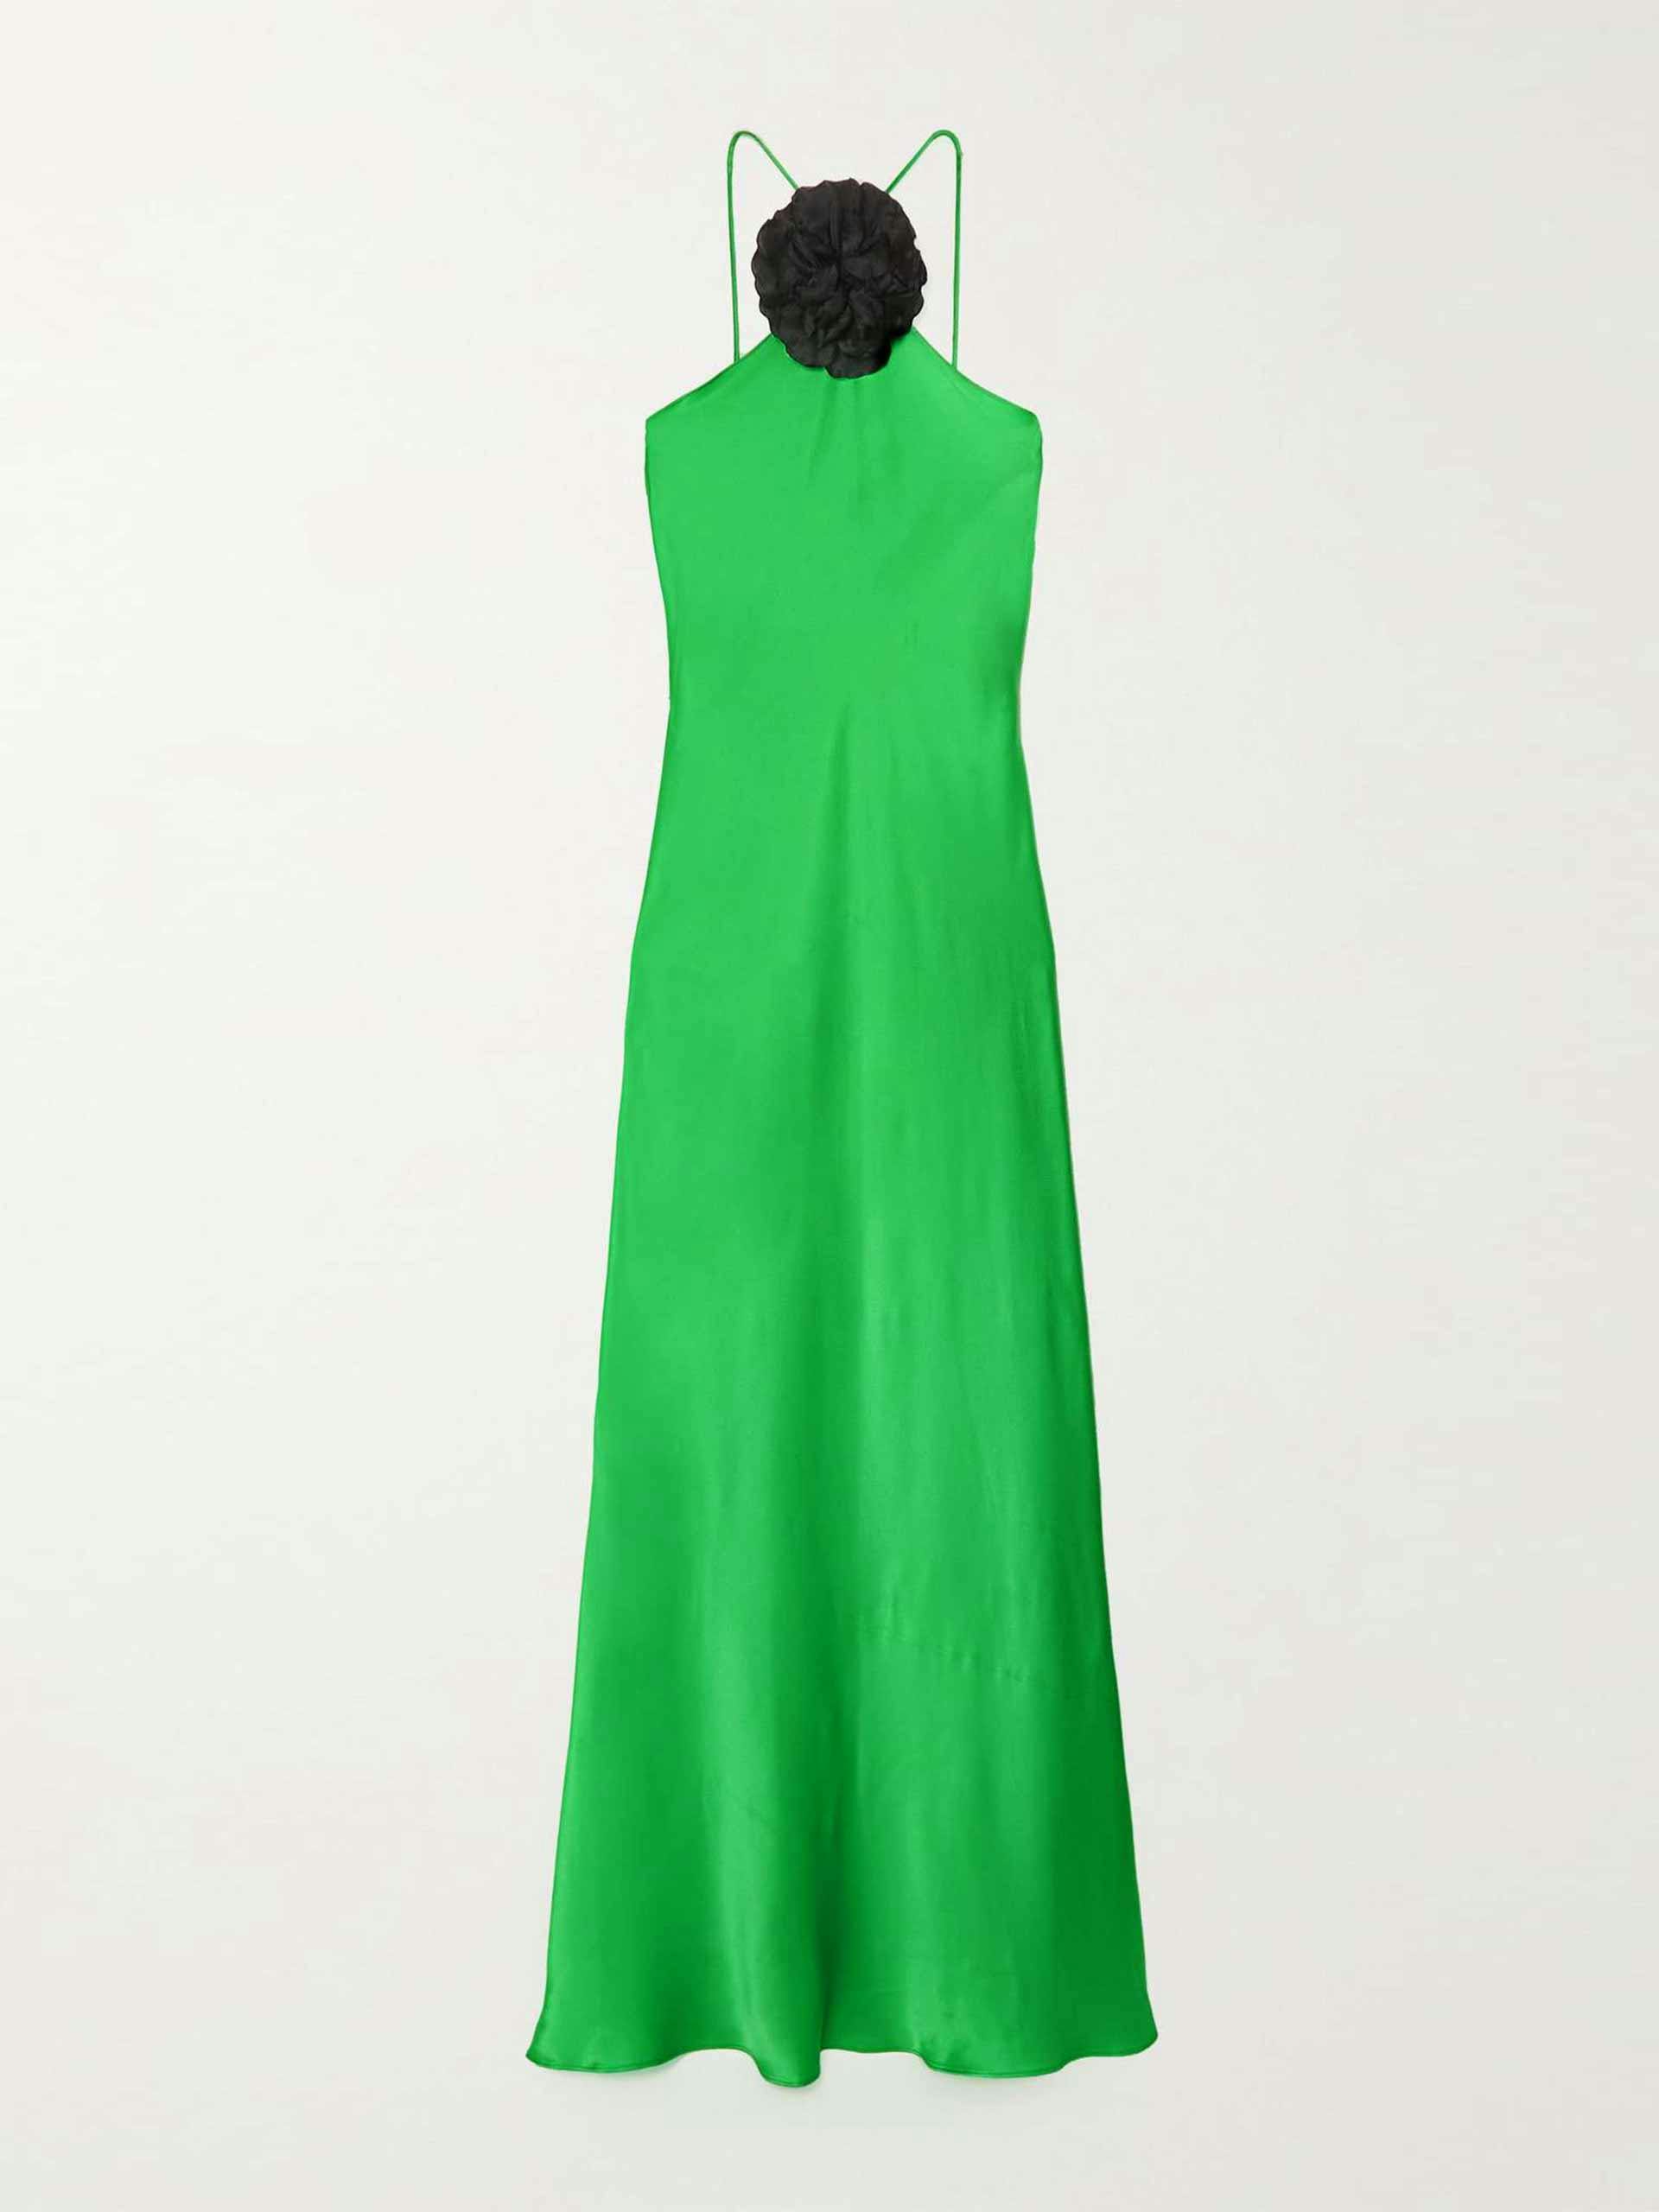 Floral-appliquéd green maxi dress